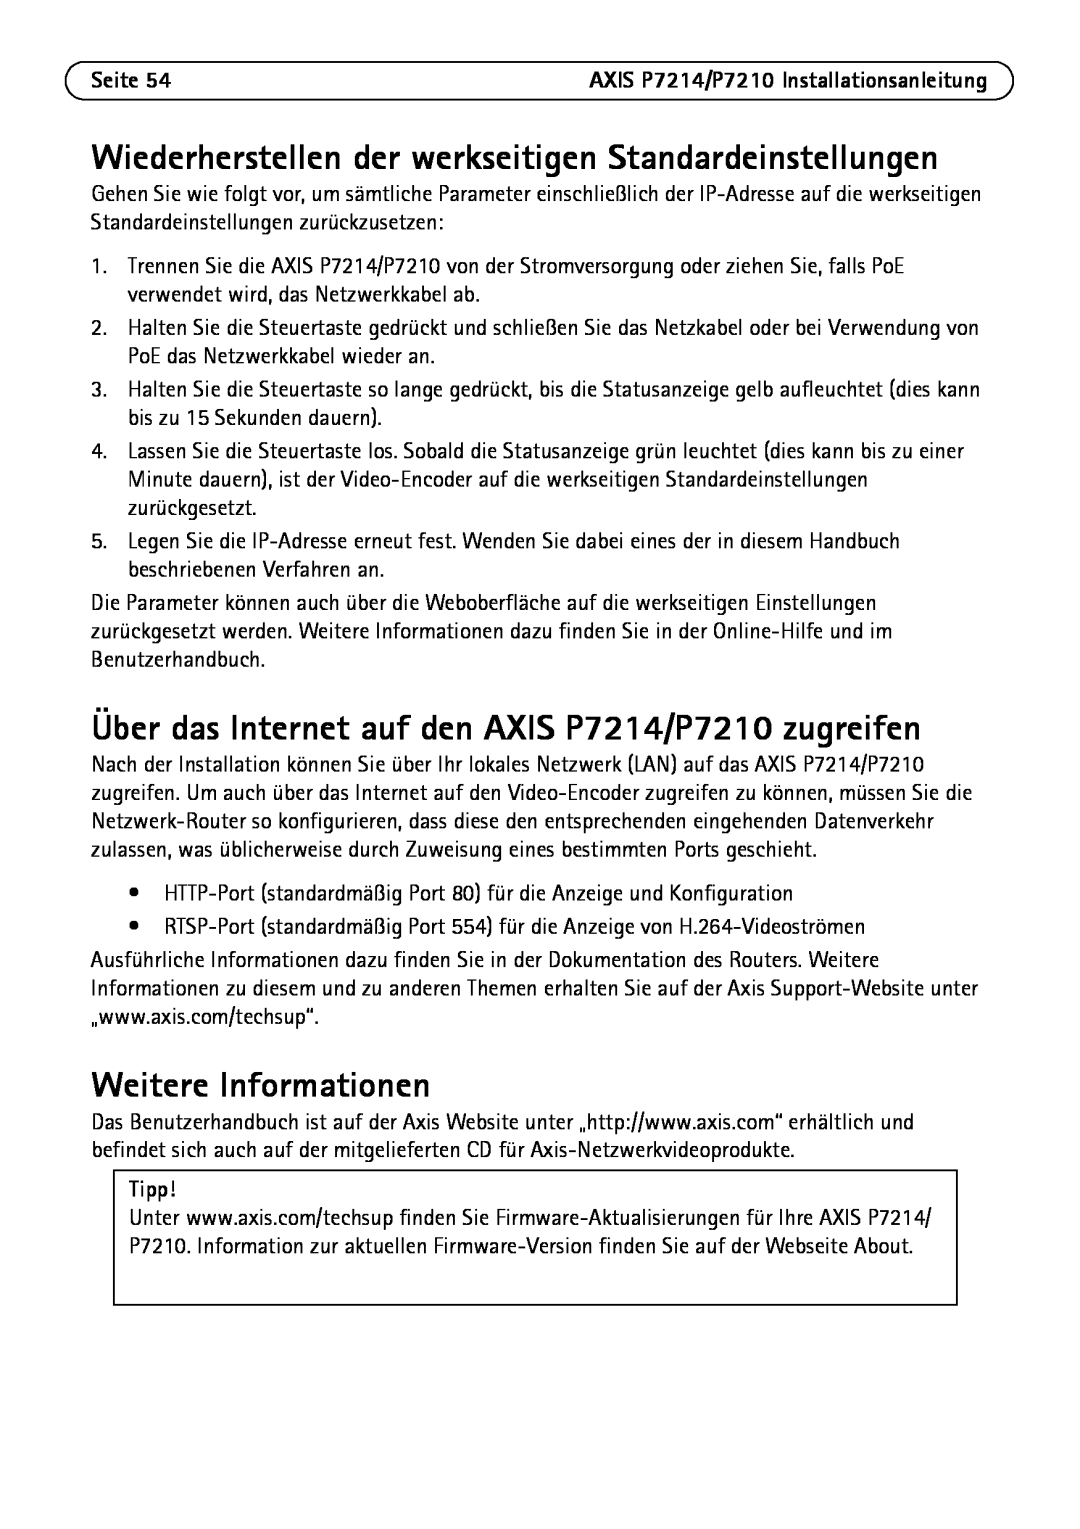 Axis Communications manual Über das Internet auf den AXIS P7214/P7210 zugreifen, Weitere Informationen, Tipp, Seite 